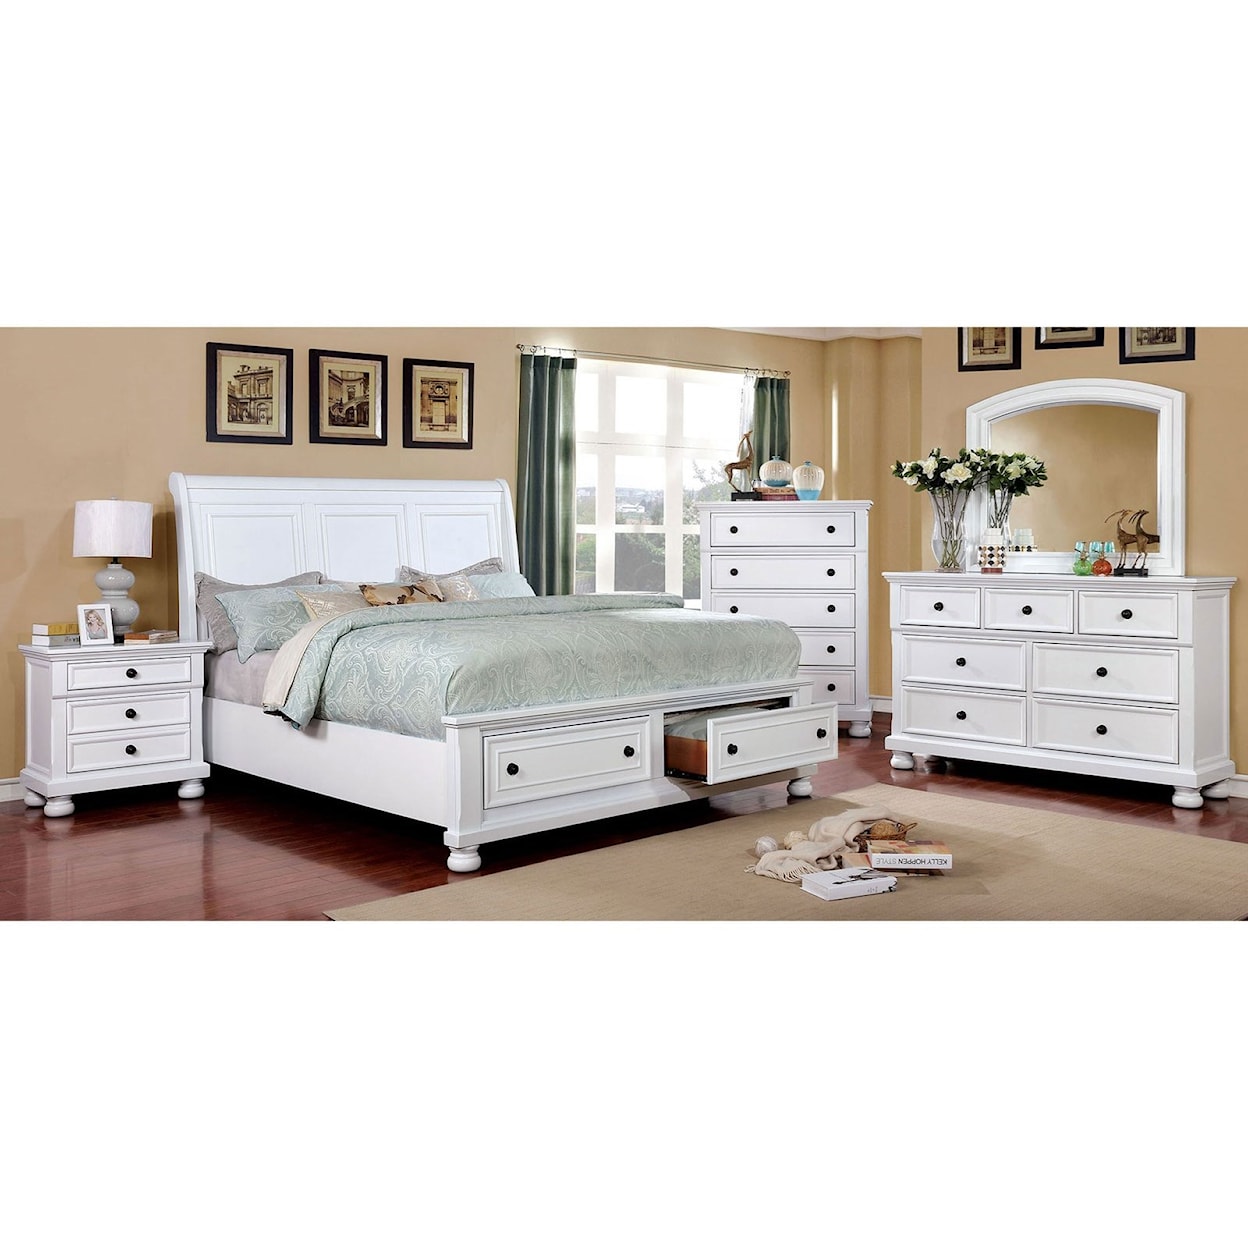 Furniture of America - FOA Castor Queen Bedroom Group